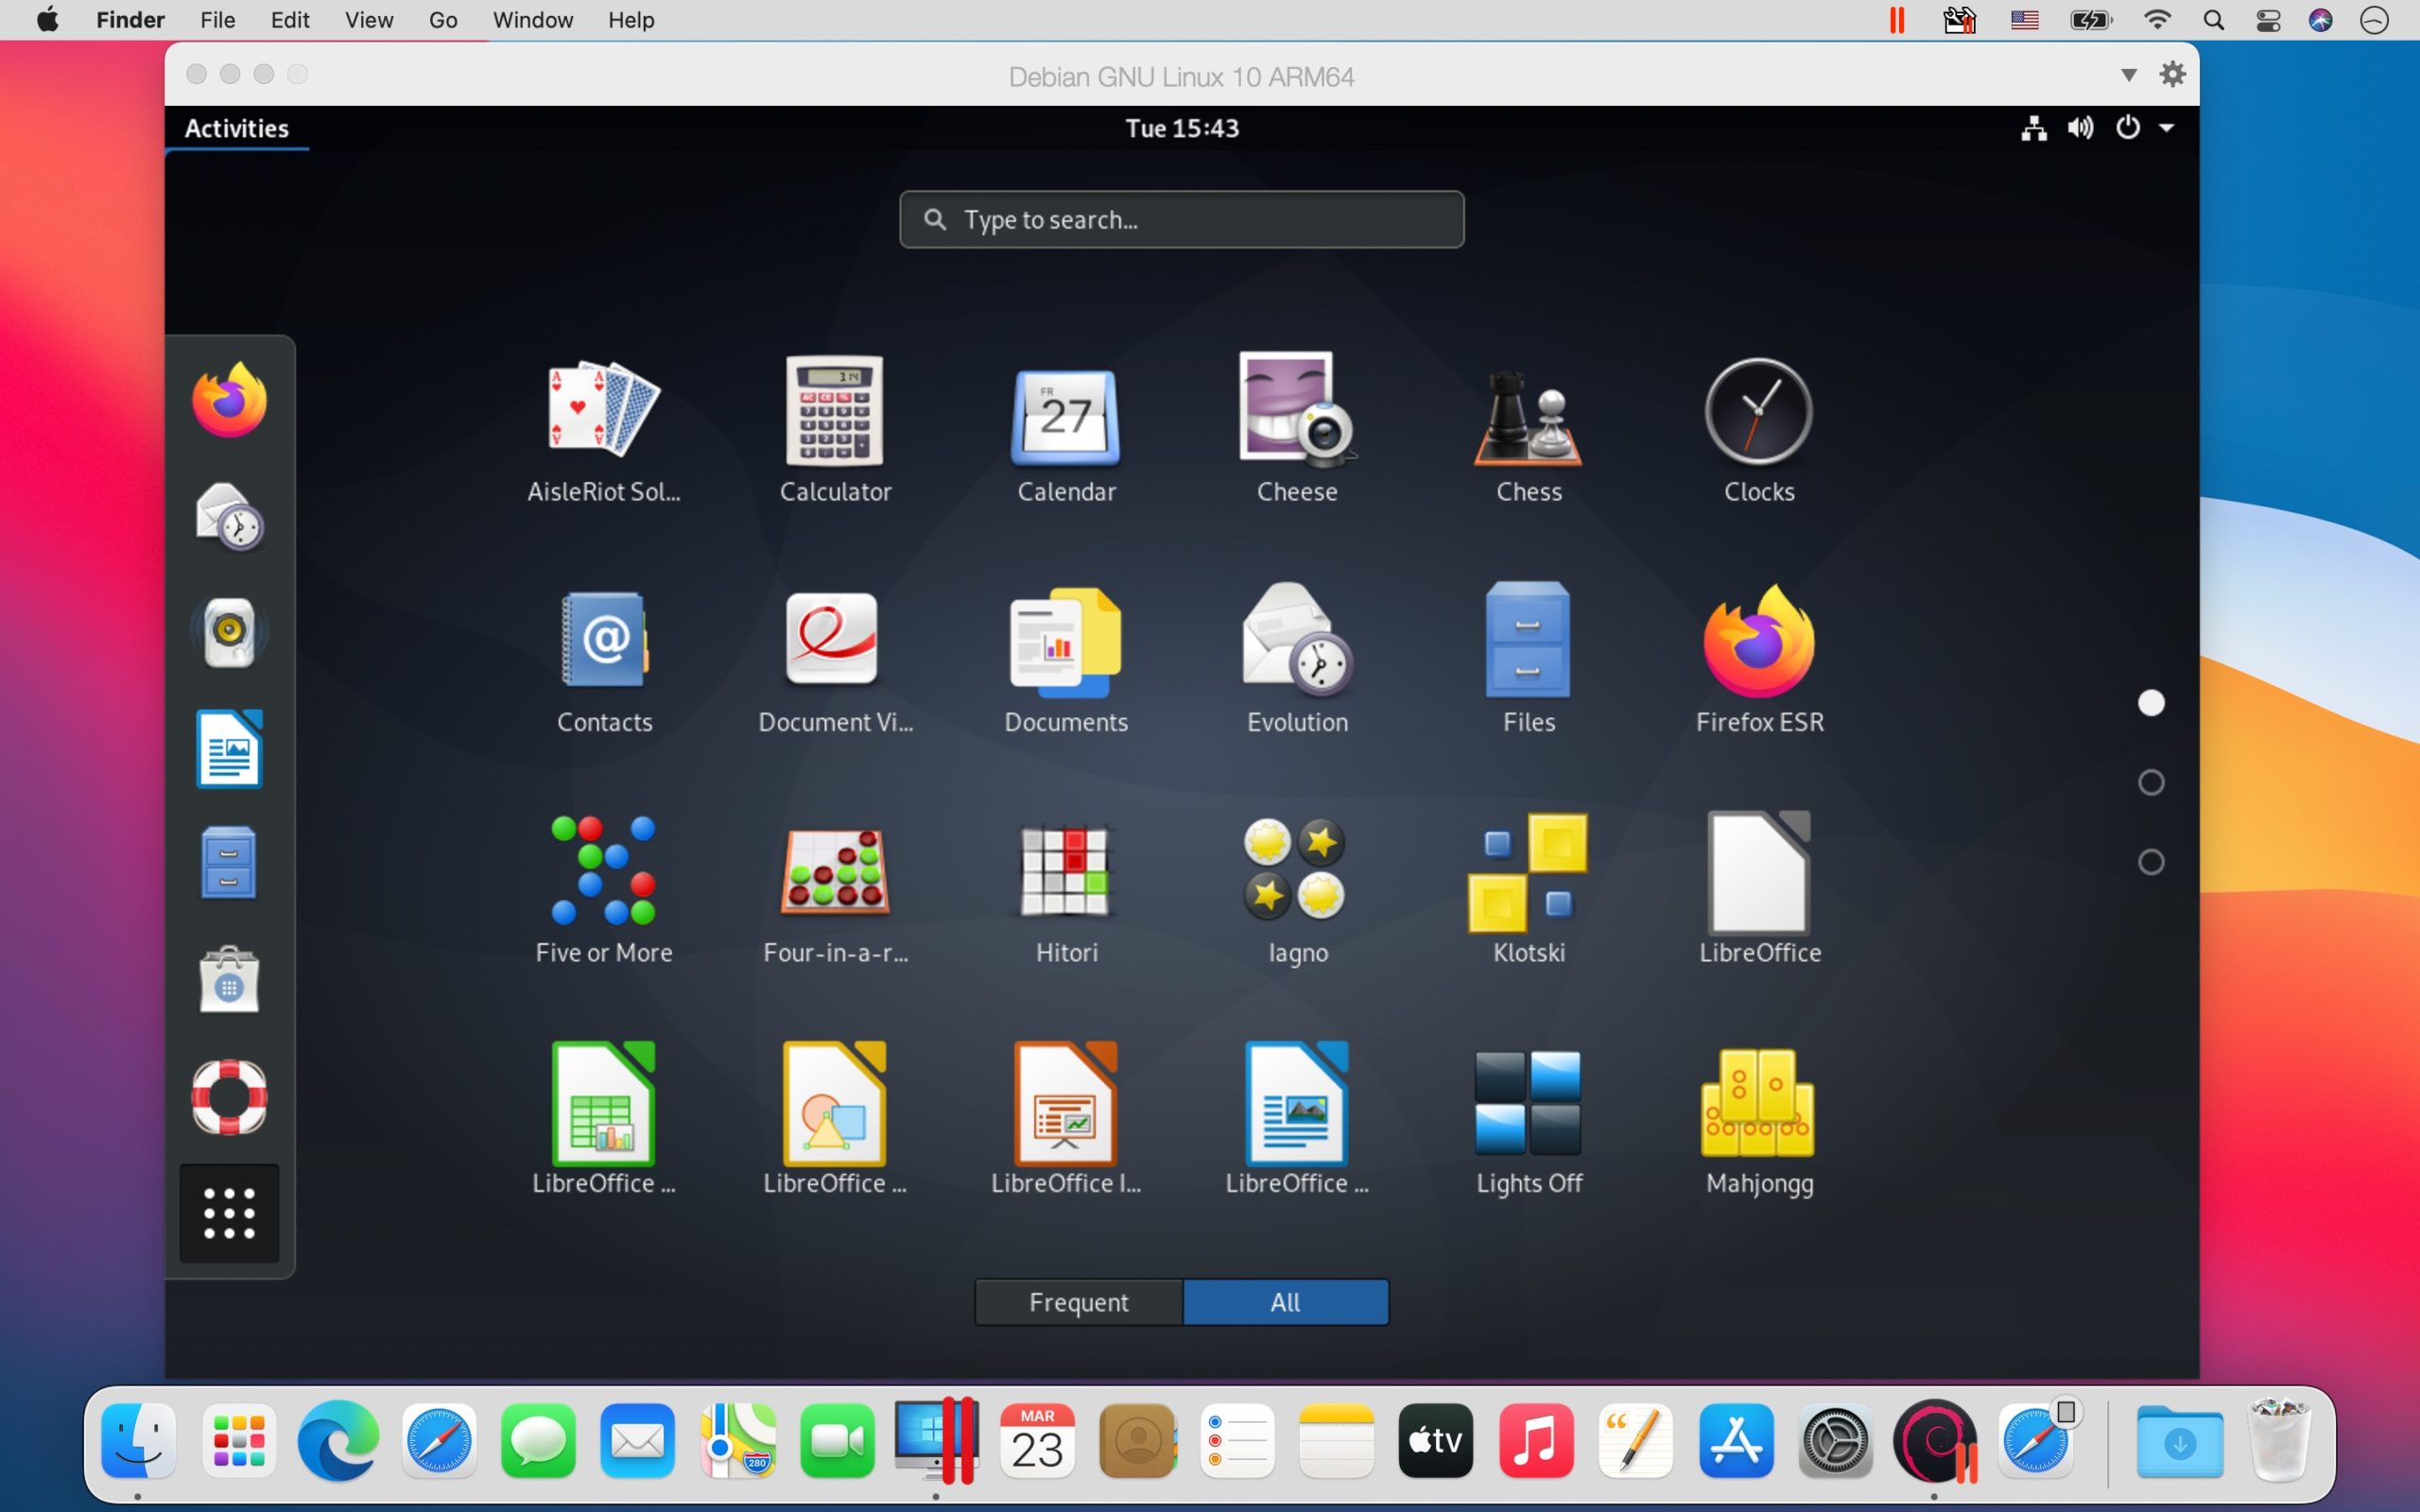 macbook pro m1 parallels desktop